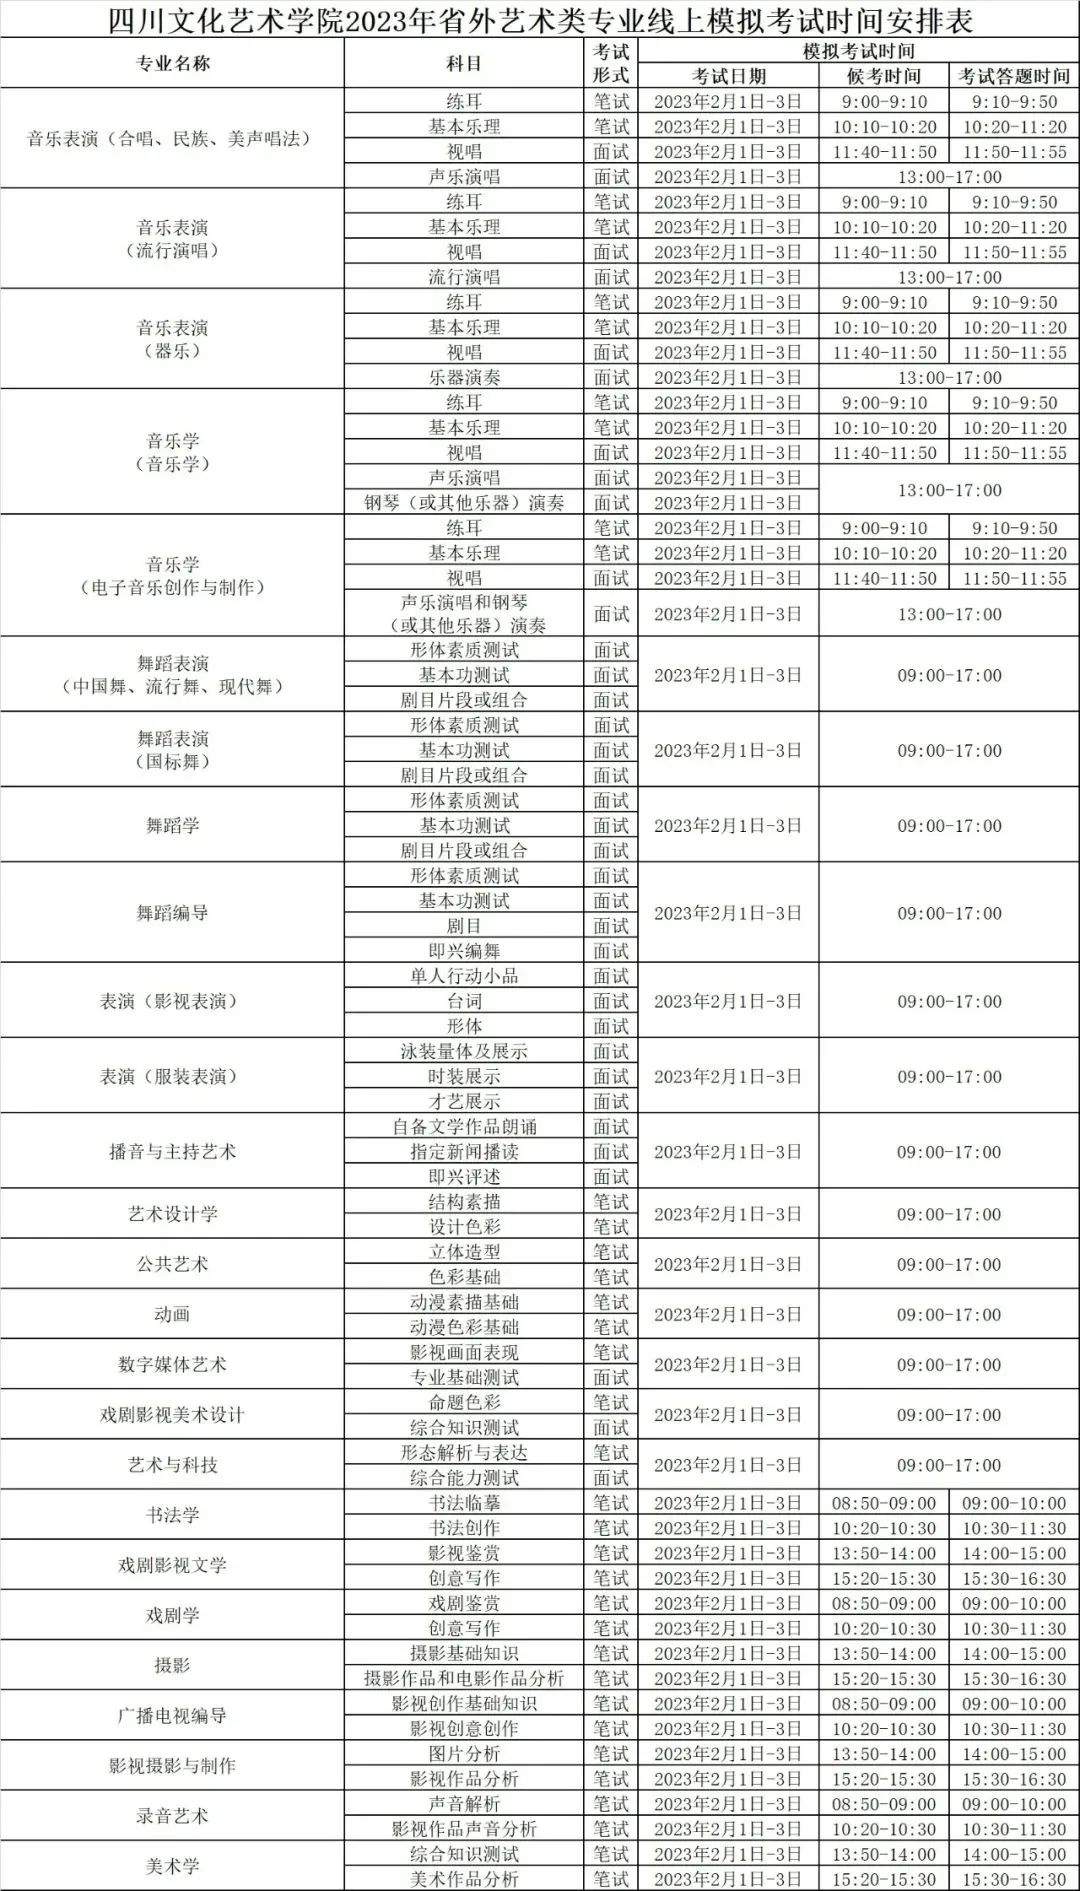 四川文化艺术学院2023省外校考报名及考试时间